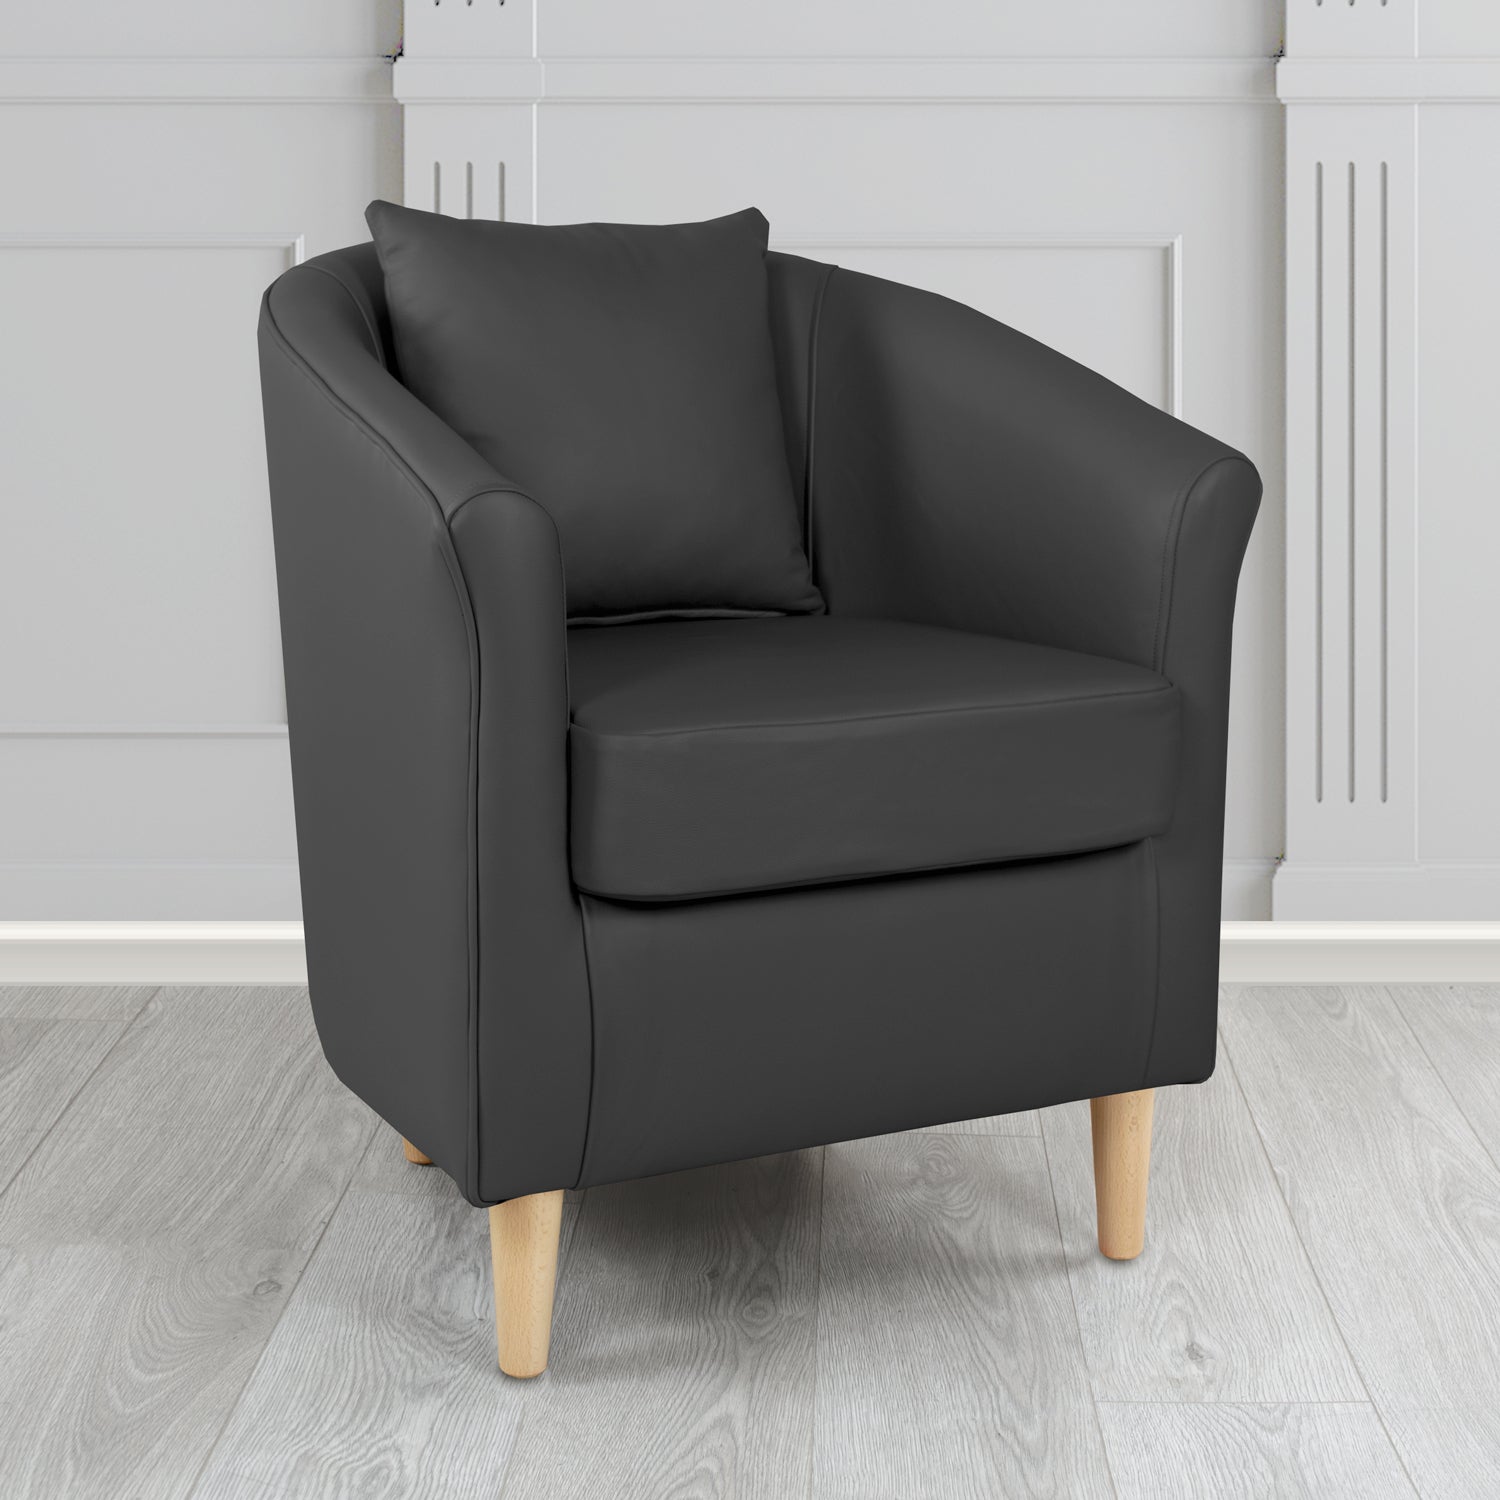 St Tropez Tub Chair in Crib 5 Contempo Black Genuine Leather